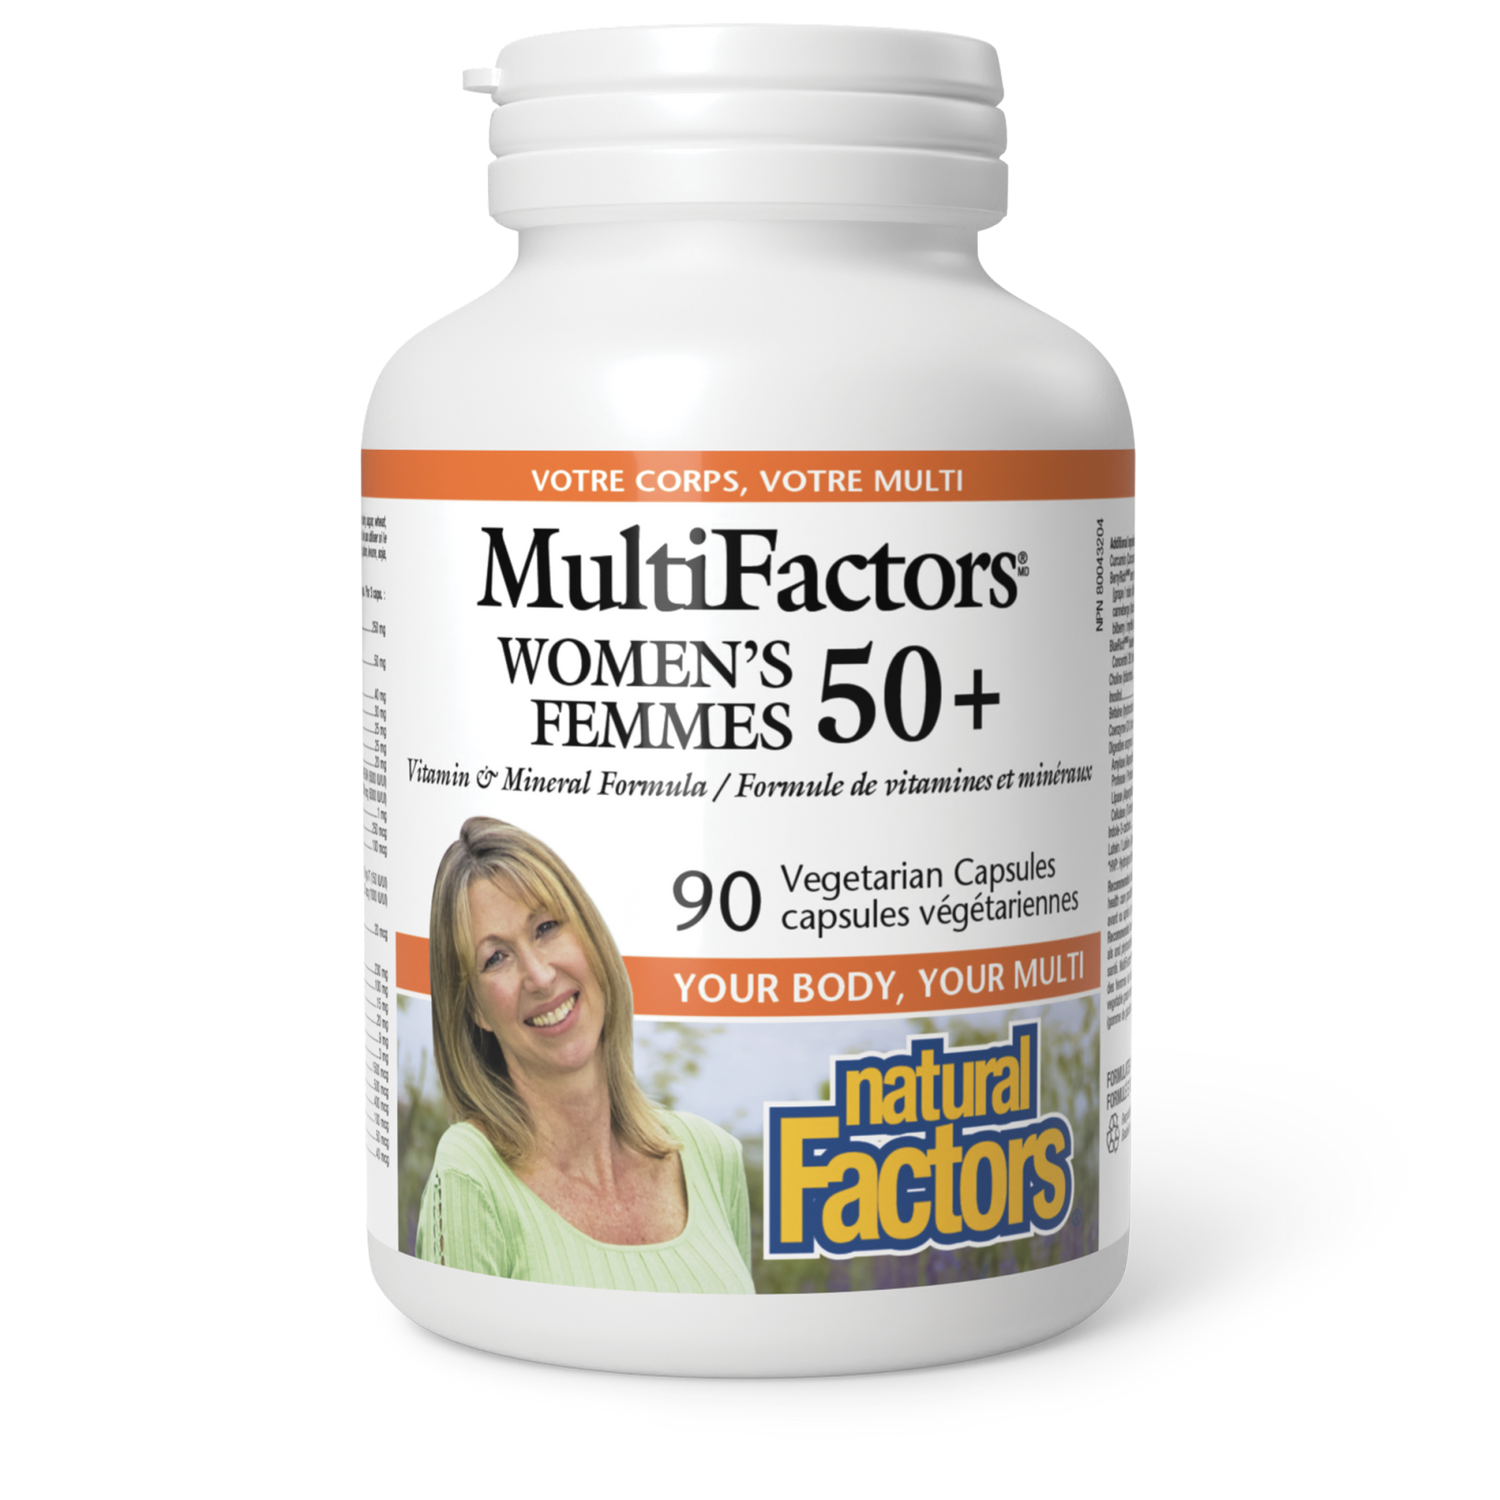 Femmes 50+, MultiFactors, Natural Factors|v|image|1587